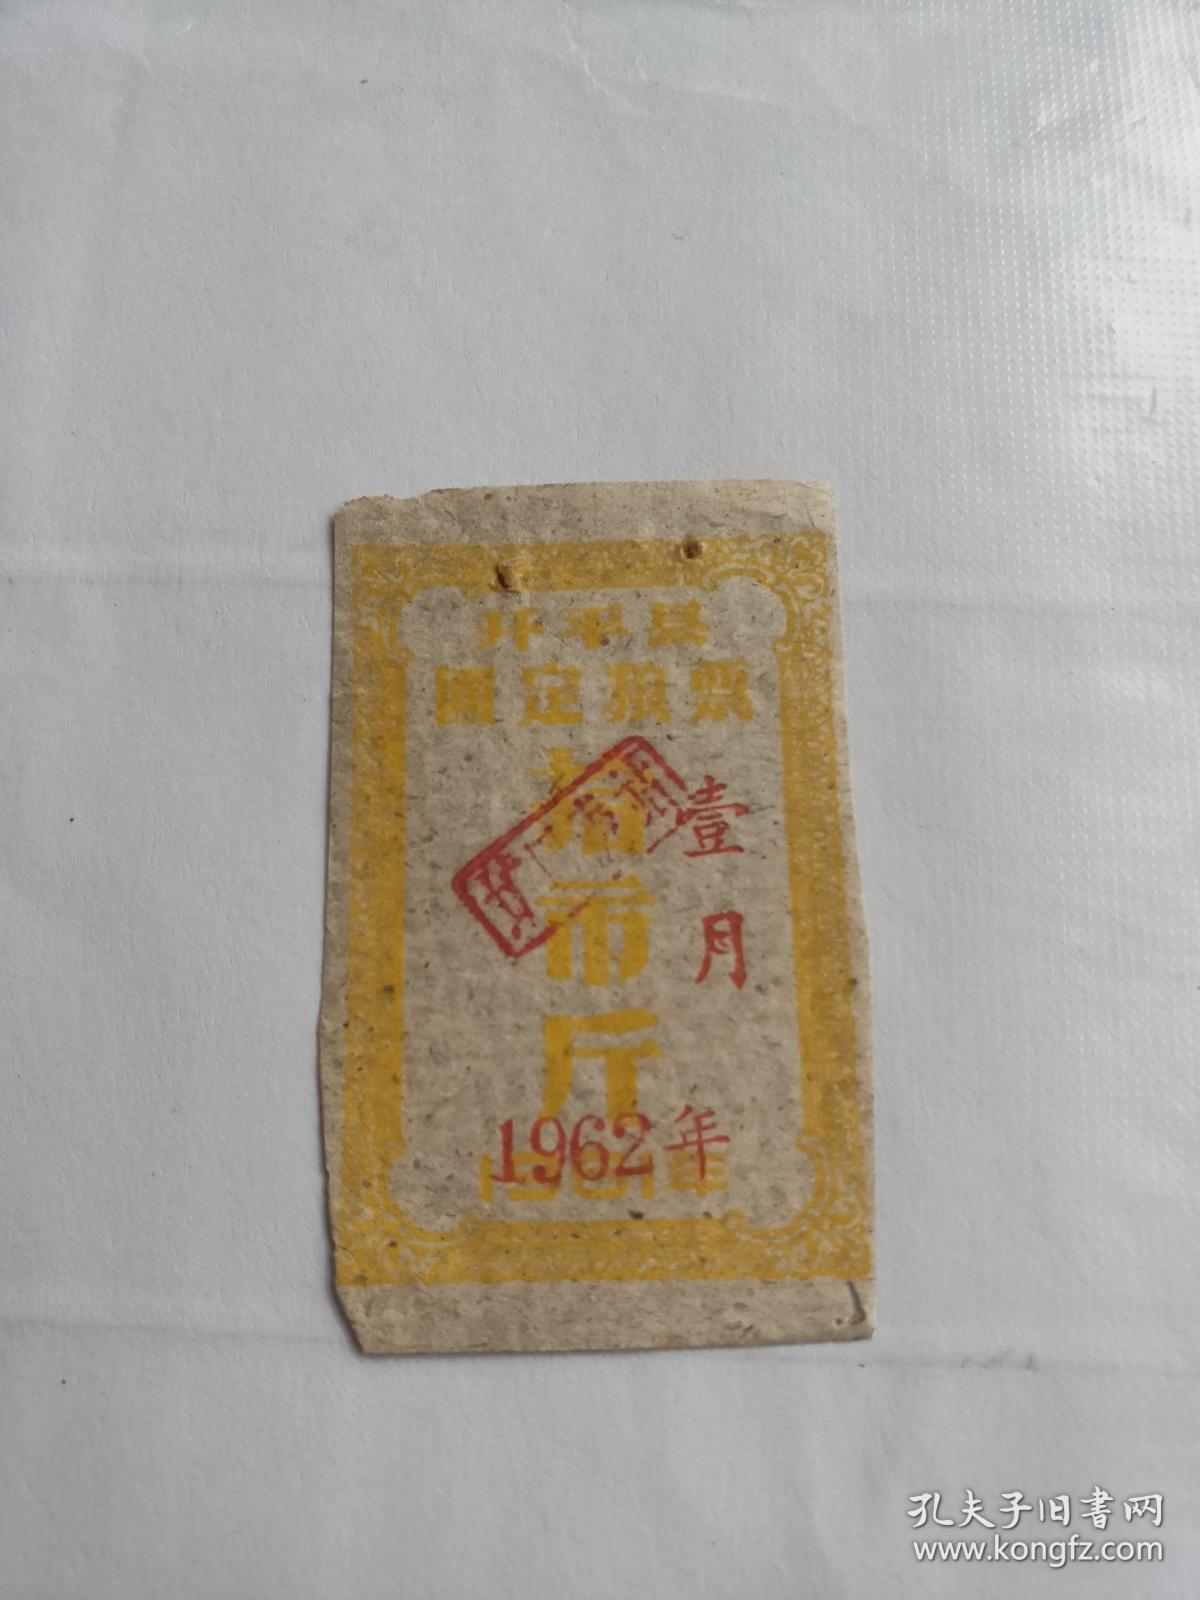 1962年广东省开平县固定粮票10市斤